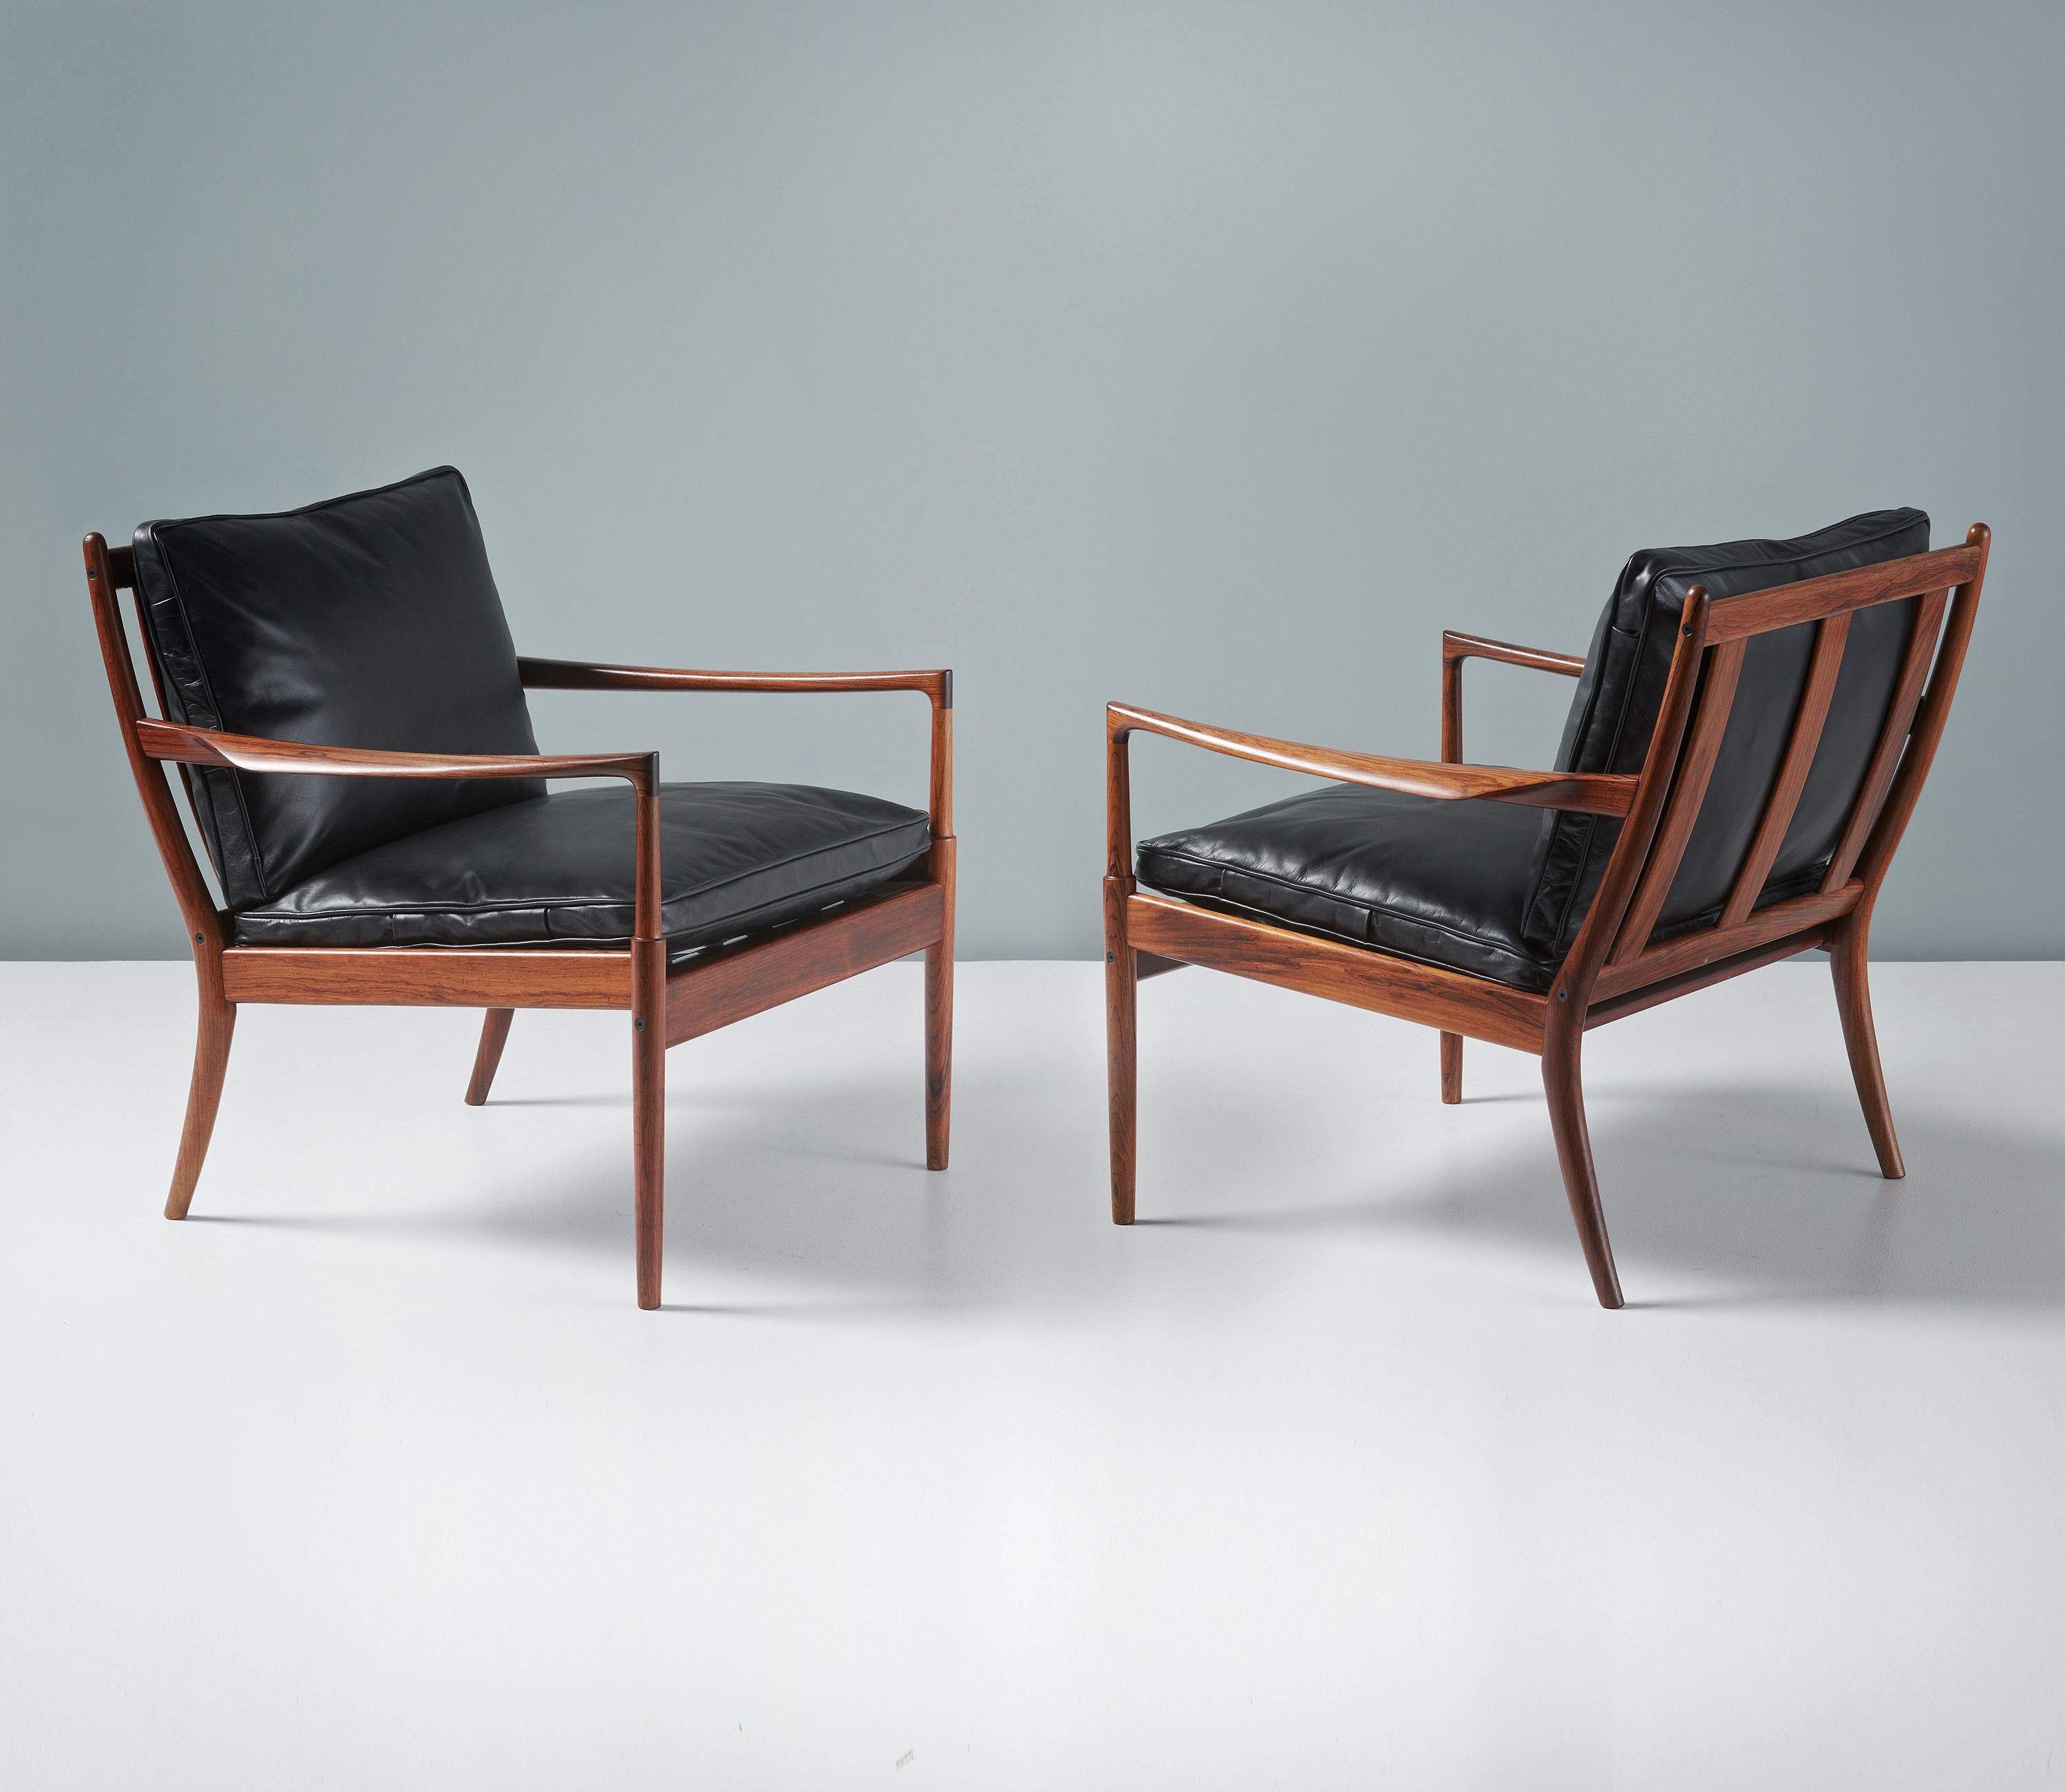 Ib Kofod-Larsen - Paire de chaises longues Samso, vers 1958.

Chaises longues rares produites par Olof Perssons Fatoljindustri (OPE), Jonkoping, Suède. Ces exemplaires sont fabriqués en bois de rose exotique hautement figuré et sont équipés de